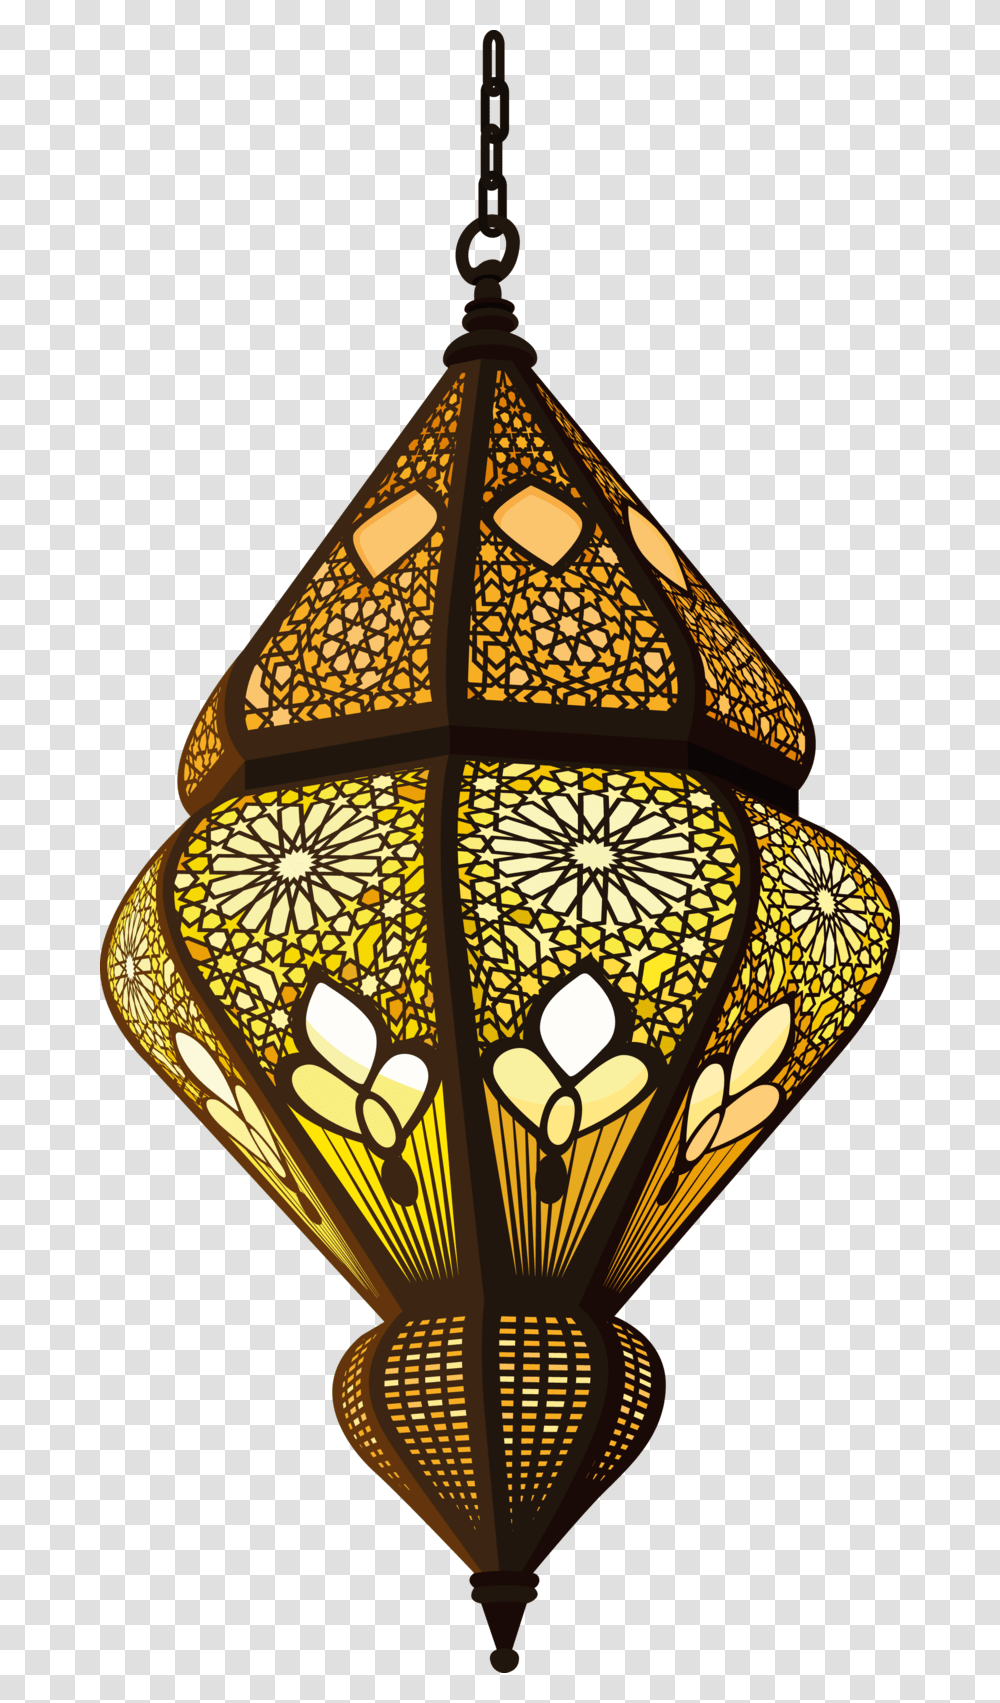 Decorative Muslim Quran Allah Sufism Lamp Islam Islamic Lamps, Lampshade, Light Fixture Transparent Png